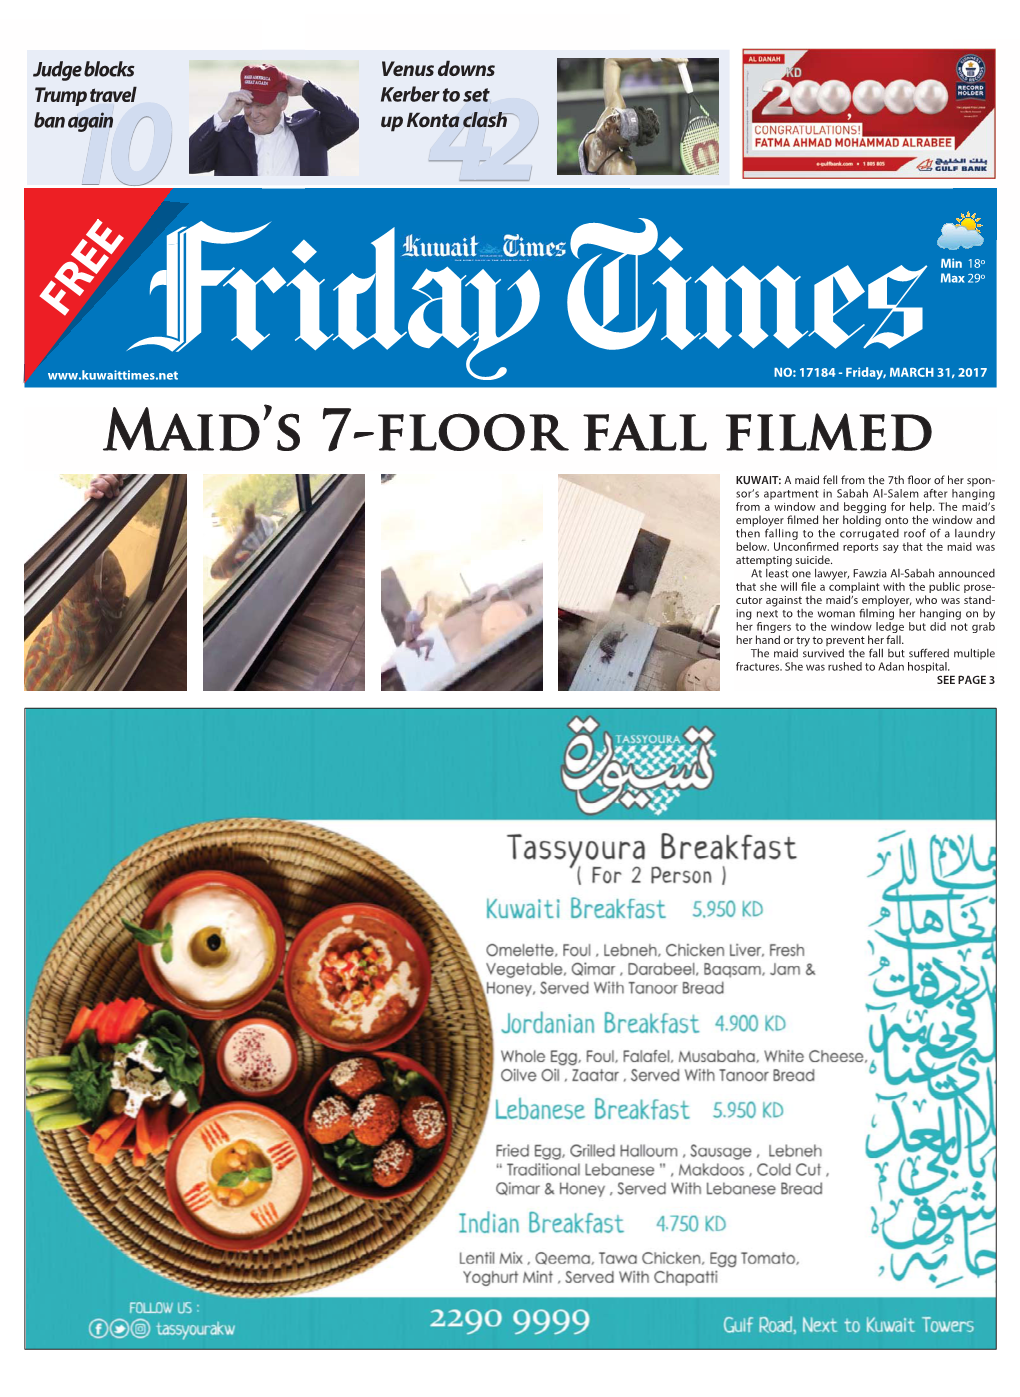 Maid's 7-Floor Fall Filmed